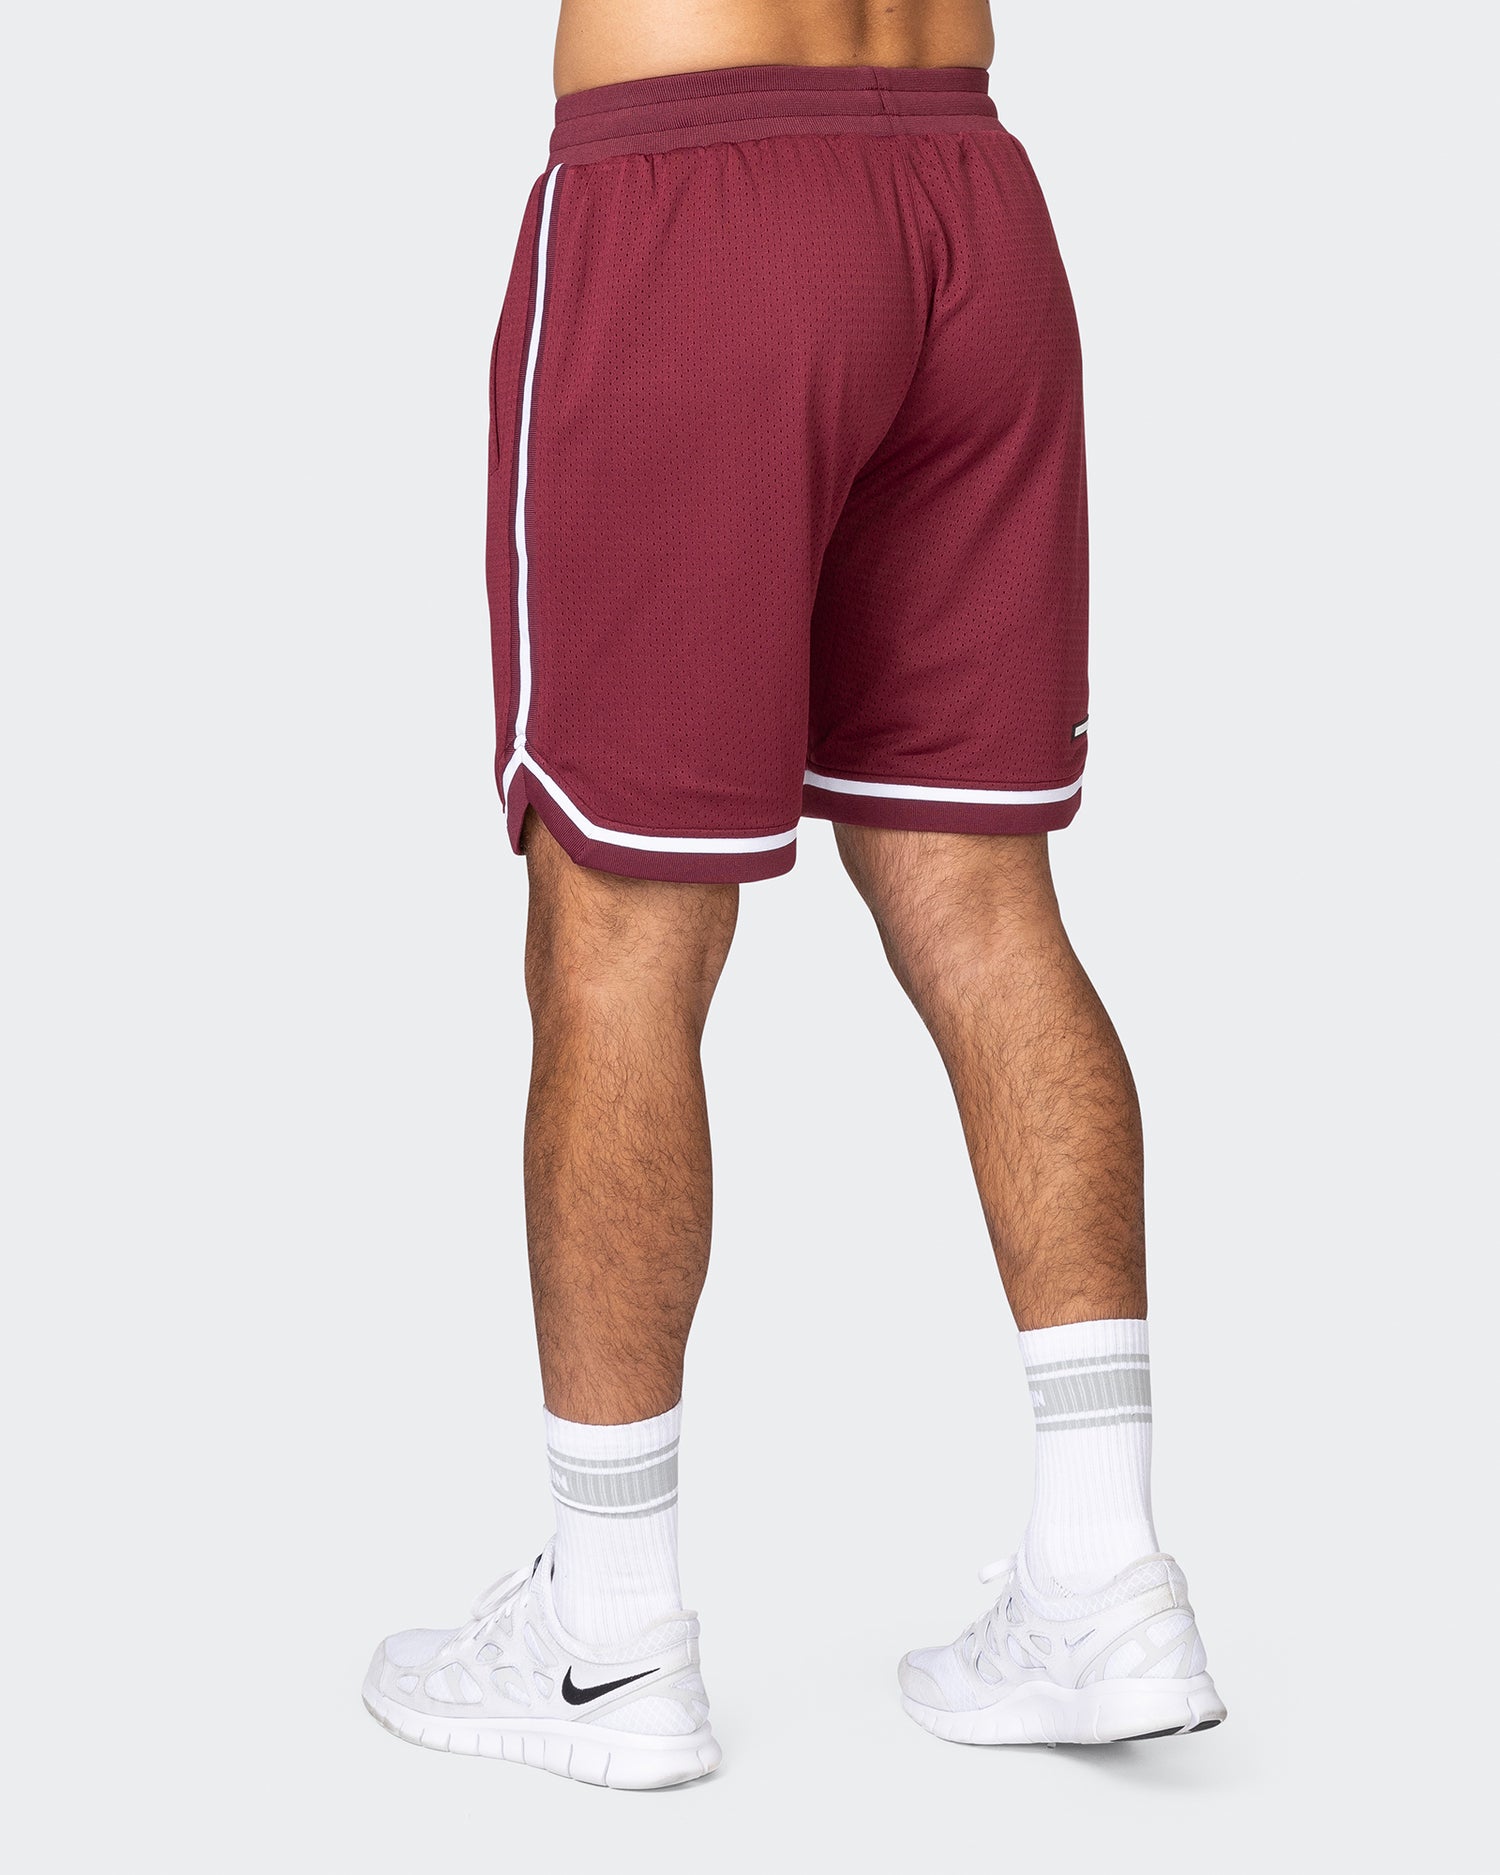 Mens 8" Basketball Shorts - Wine